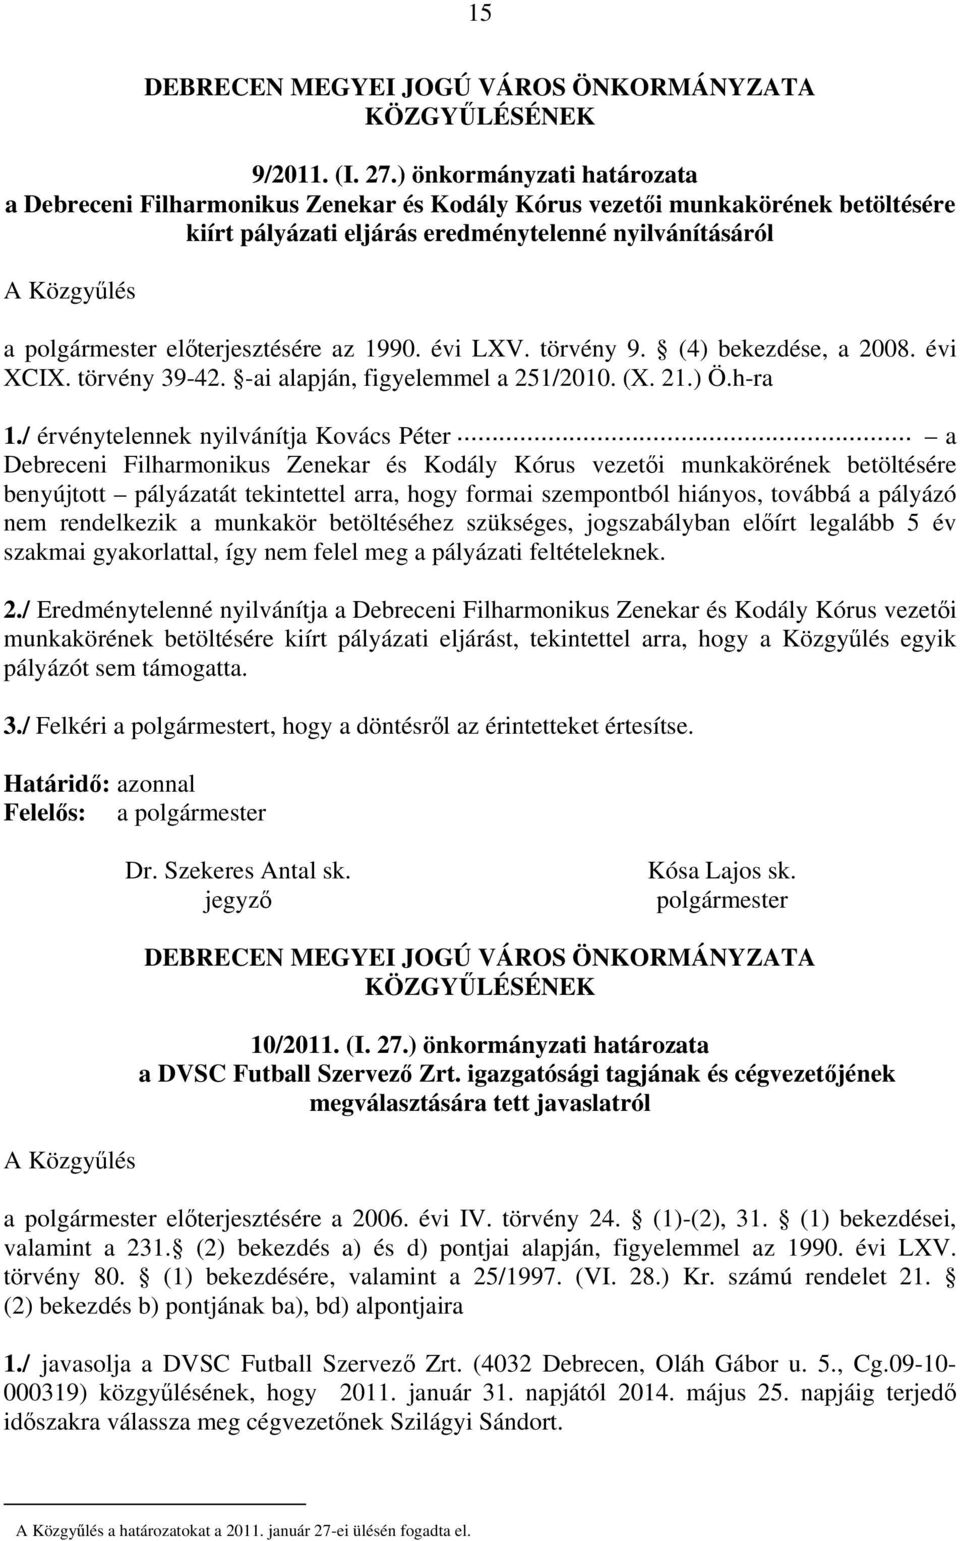 előterjesztésére az 1990. évi LXV. törvény 9. (4) bekezdése, a 2008. évi XCIX. törvény 39-42. -ai alapján, figyelemmel a 251/2010. (X. 21.) Ö.h-ra 1./ érvénytelennek nyilvánítja Kovács Péter.